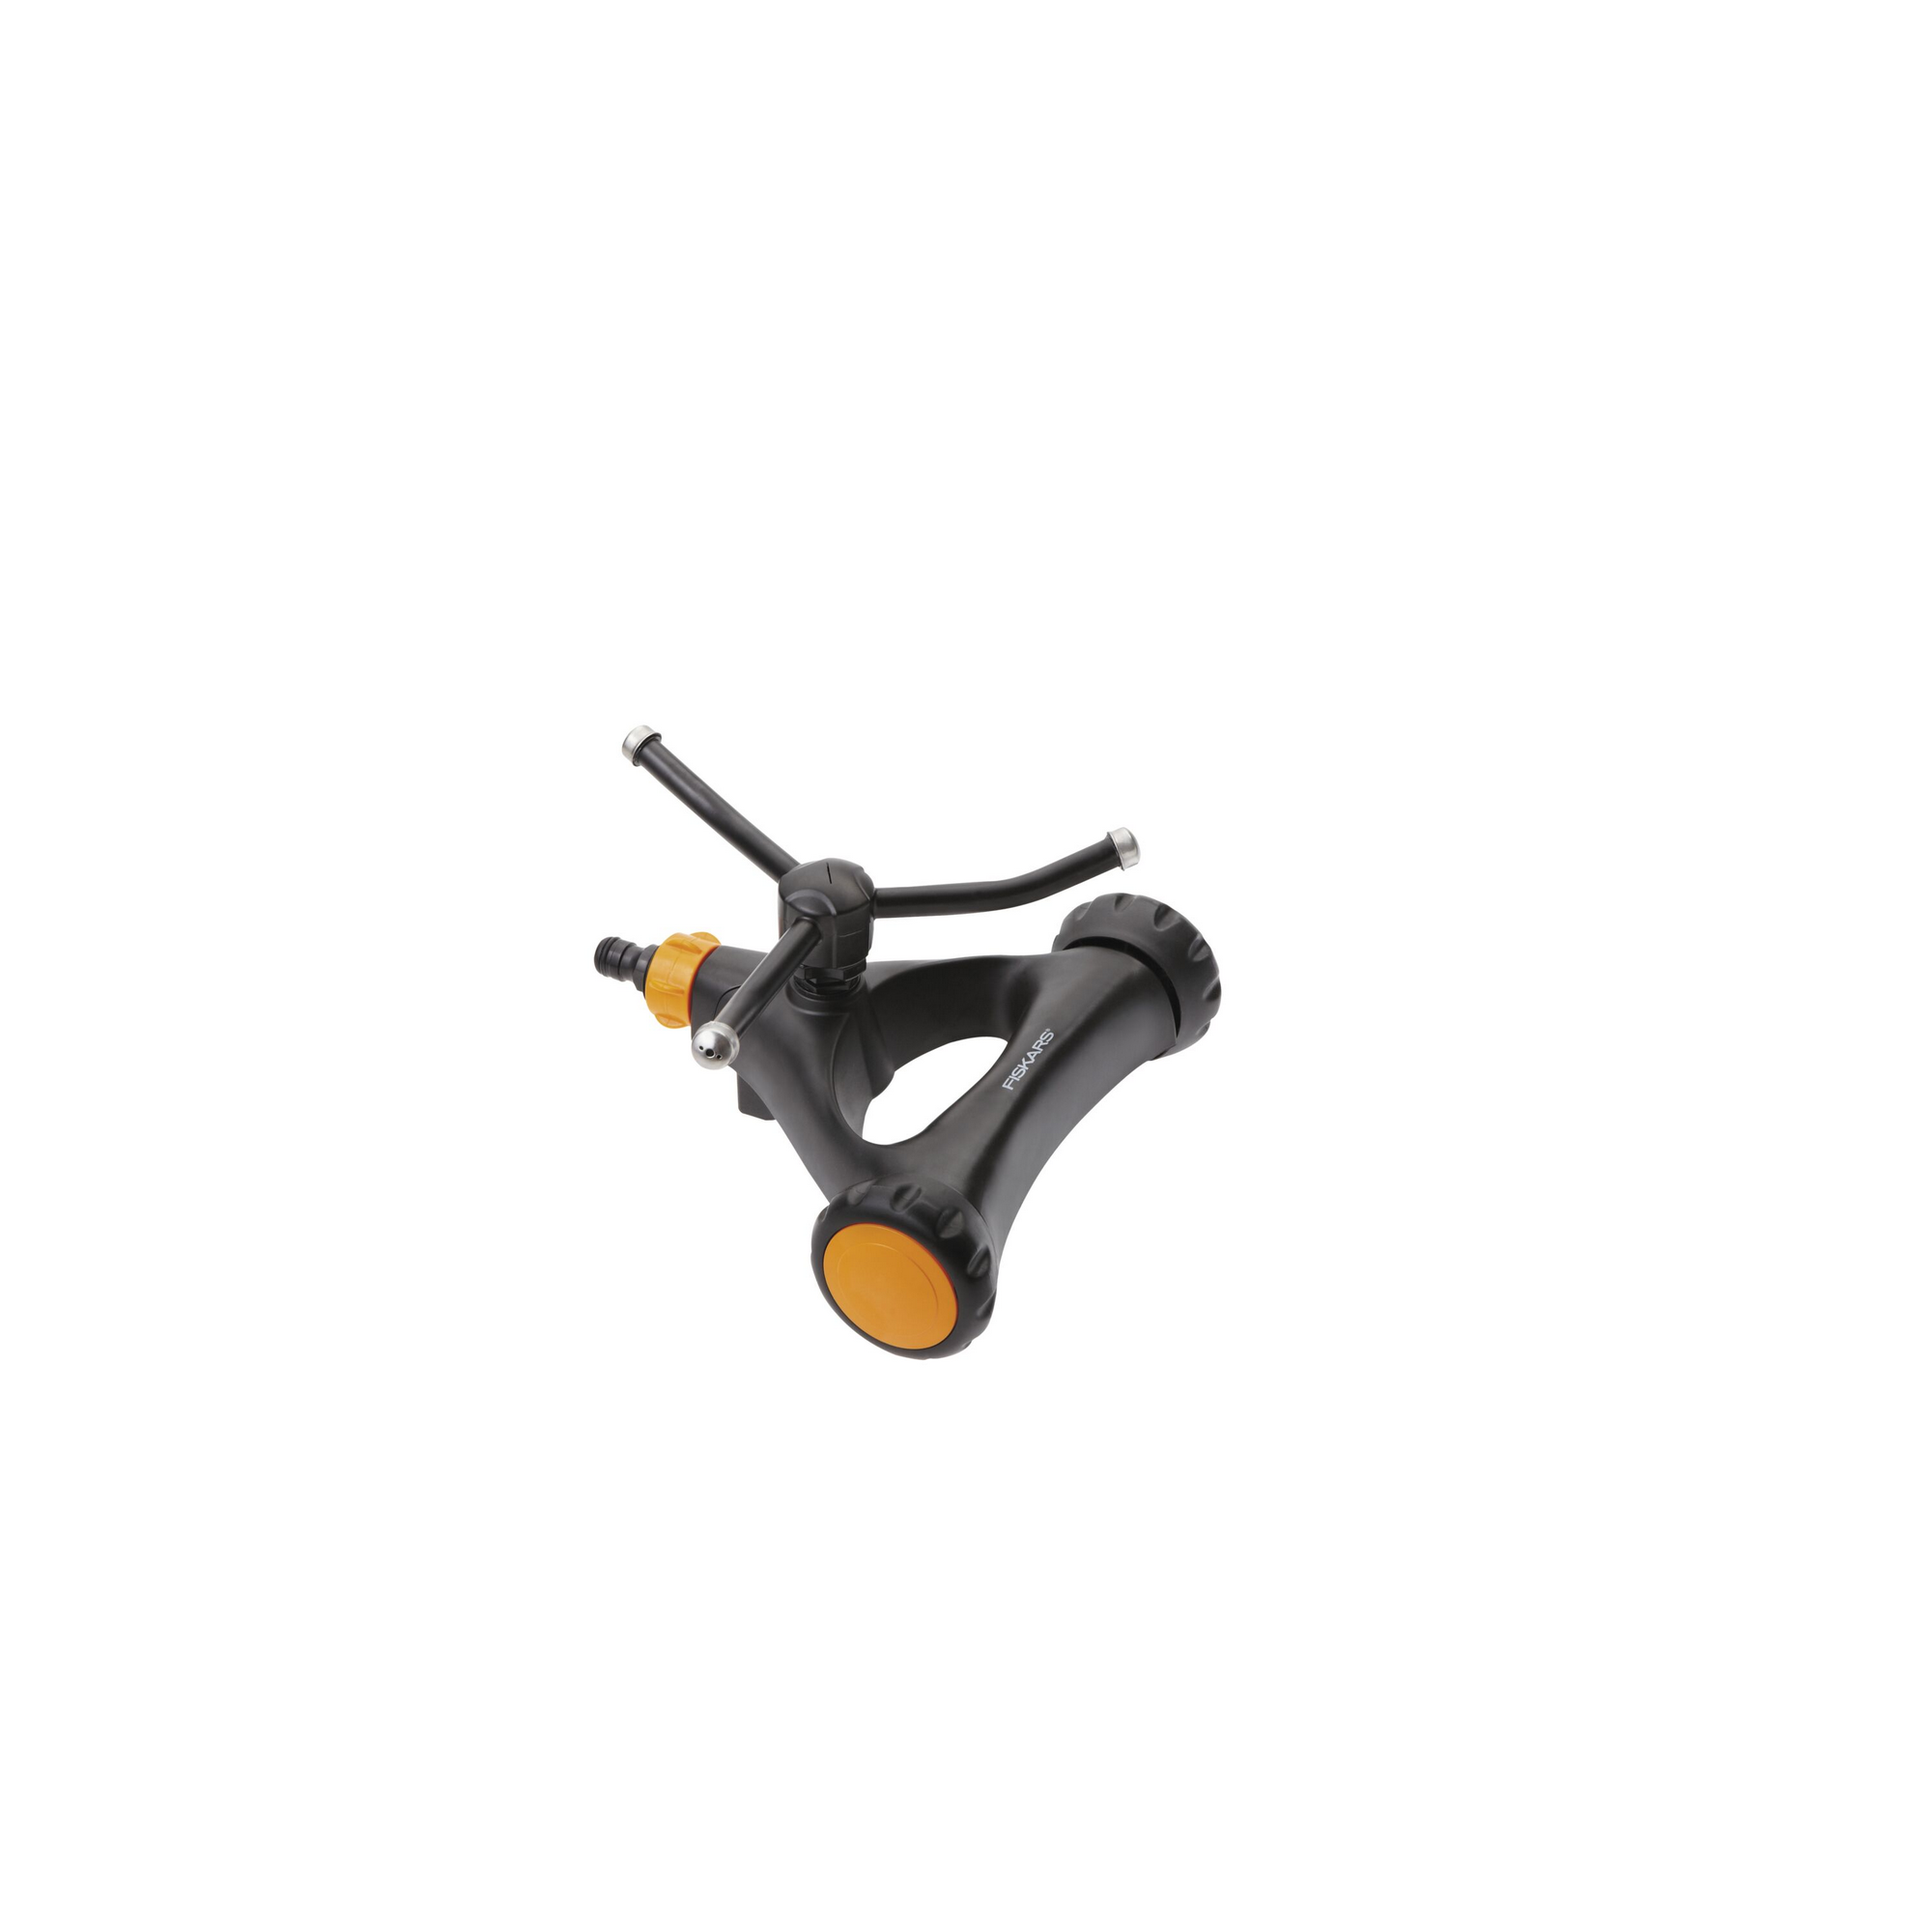 Wirbelsprinkler gelb/schwarz mit Rädern, max. Regnerfläche 150 m² + product picture